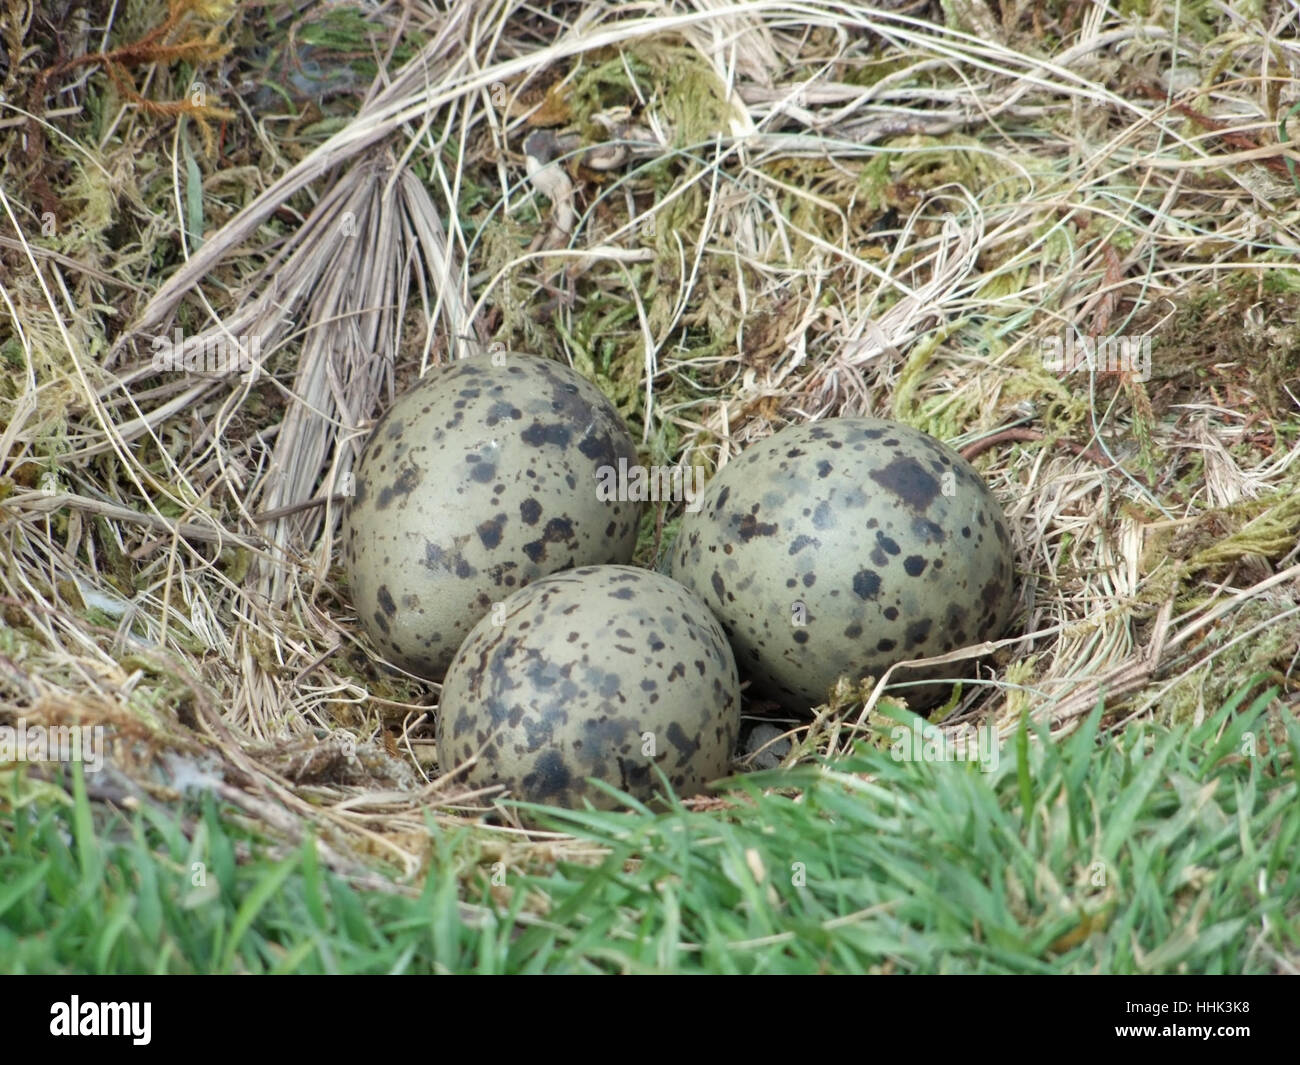 Detail shot montrant le nid d'une mouette avec 3 œufs, vu sur l'archipel des Açores, qui est un groupe d'îles volcanique situé au milieu de l'océan Atlantique Nord Banque D'Images